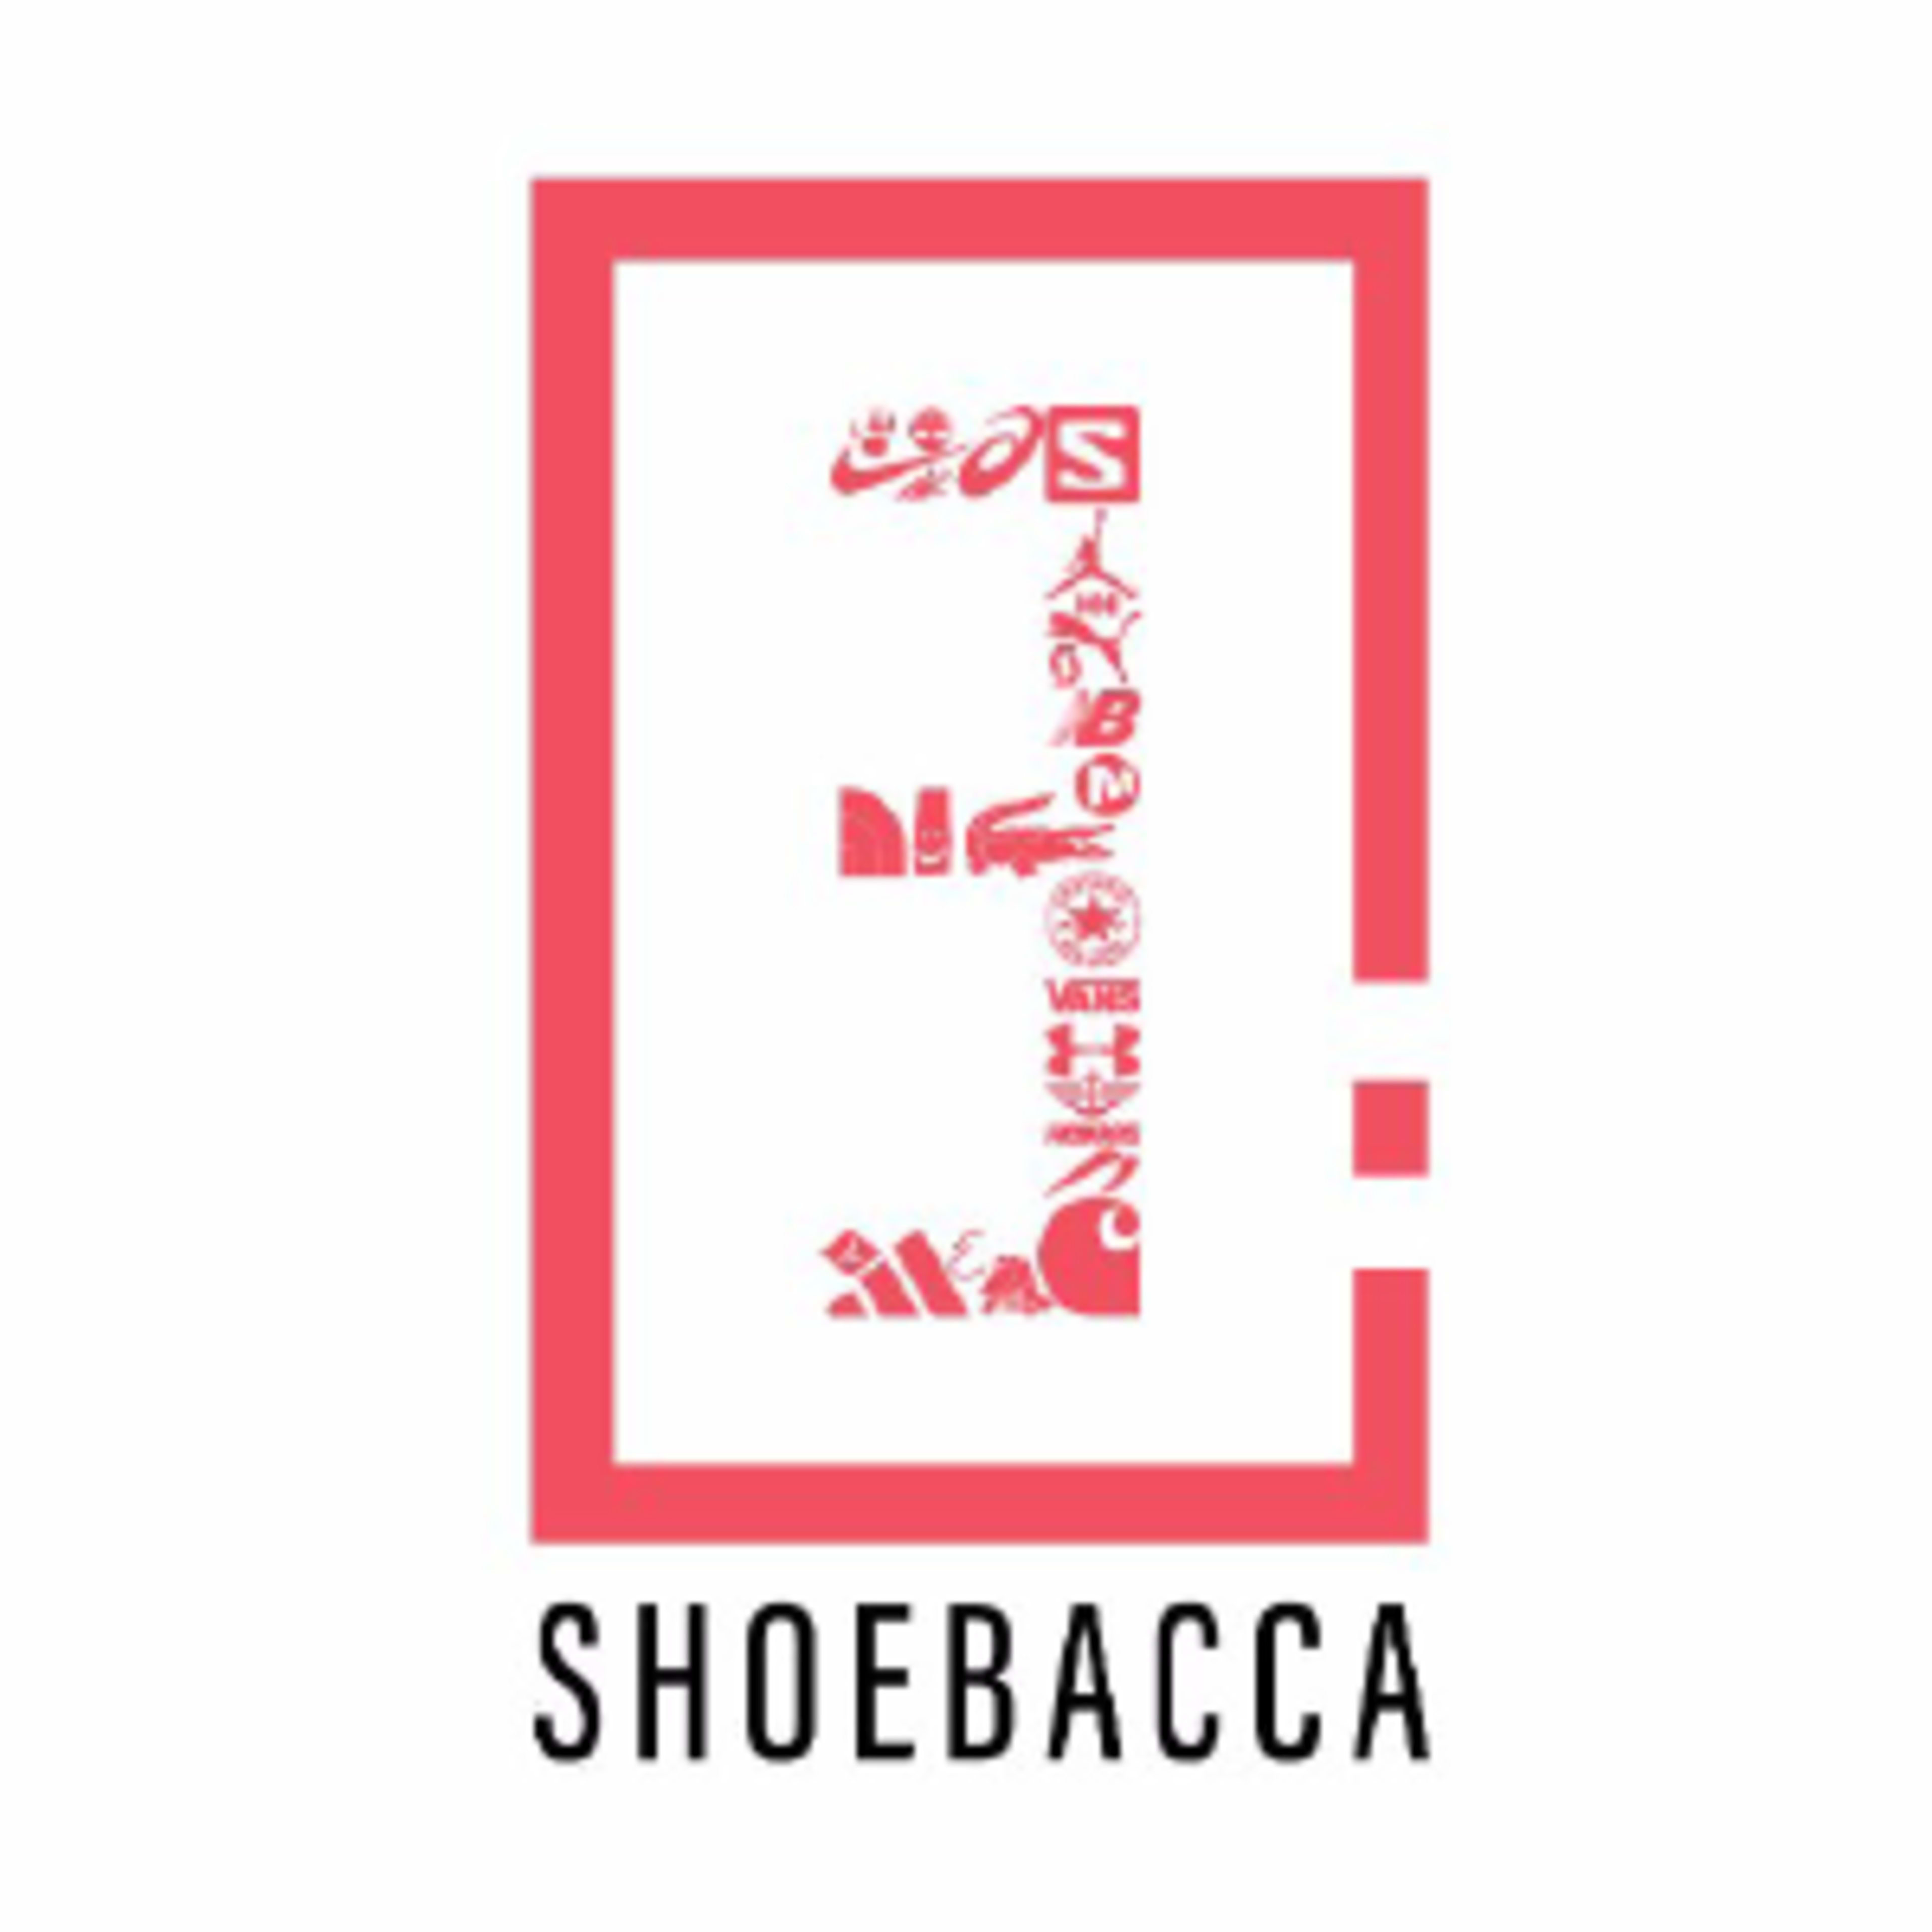 ShoebaccaCode